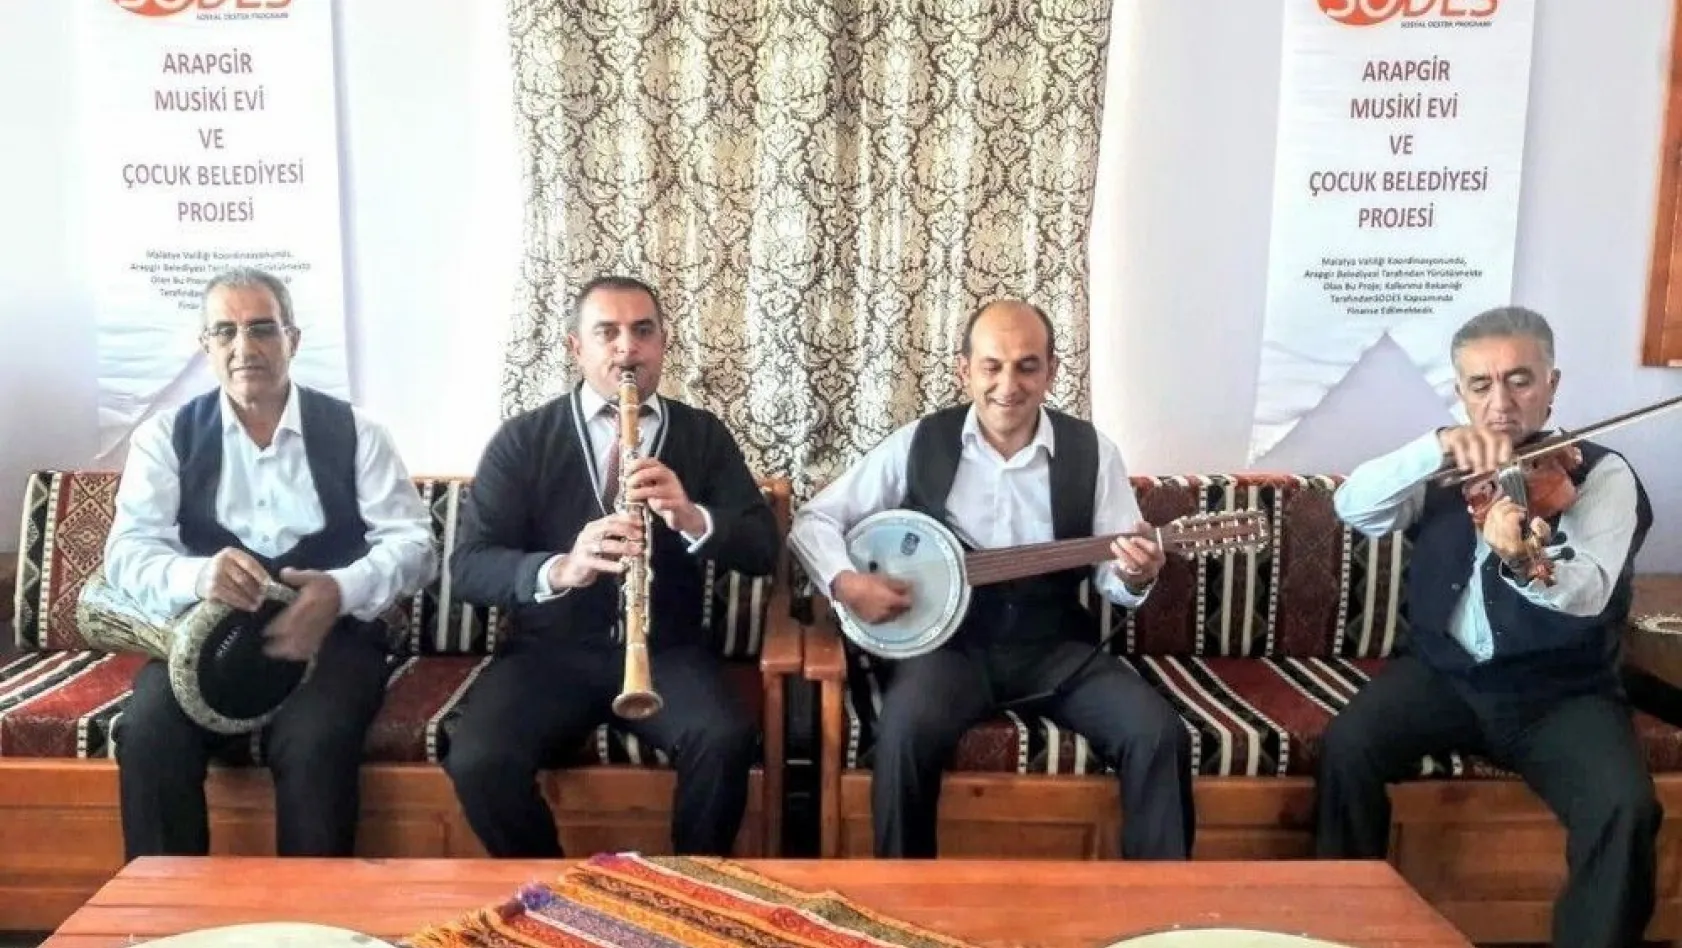 Musiki nağmeleri Arapgir'de hayat buluyor
